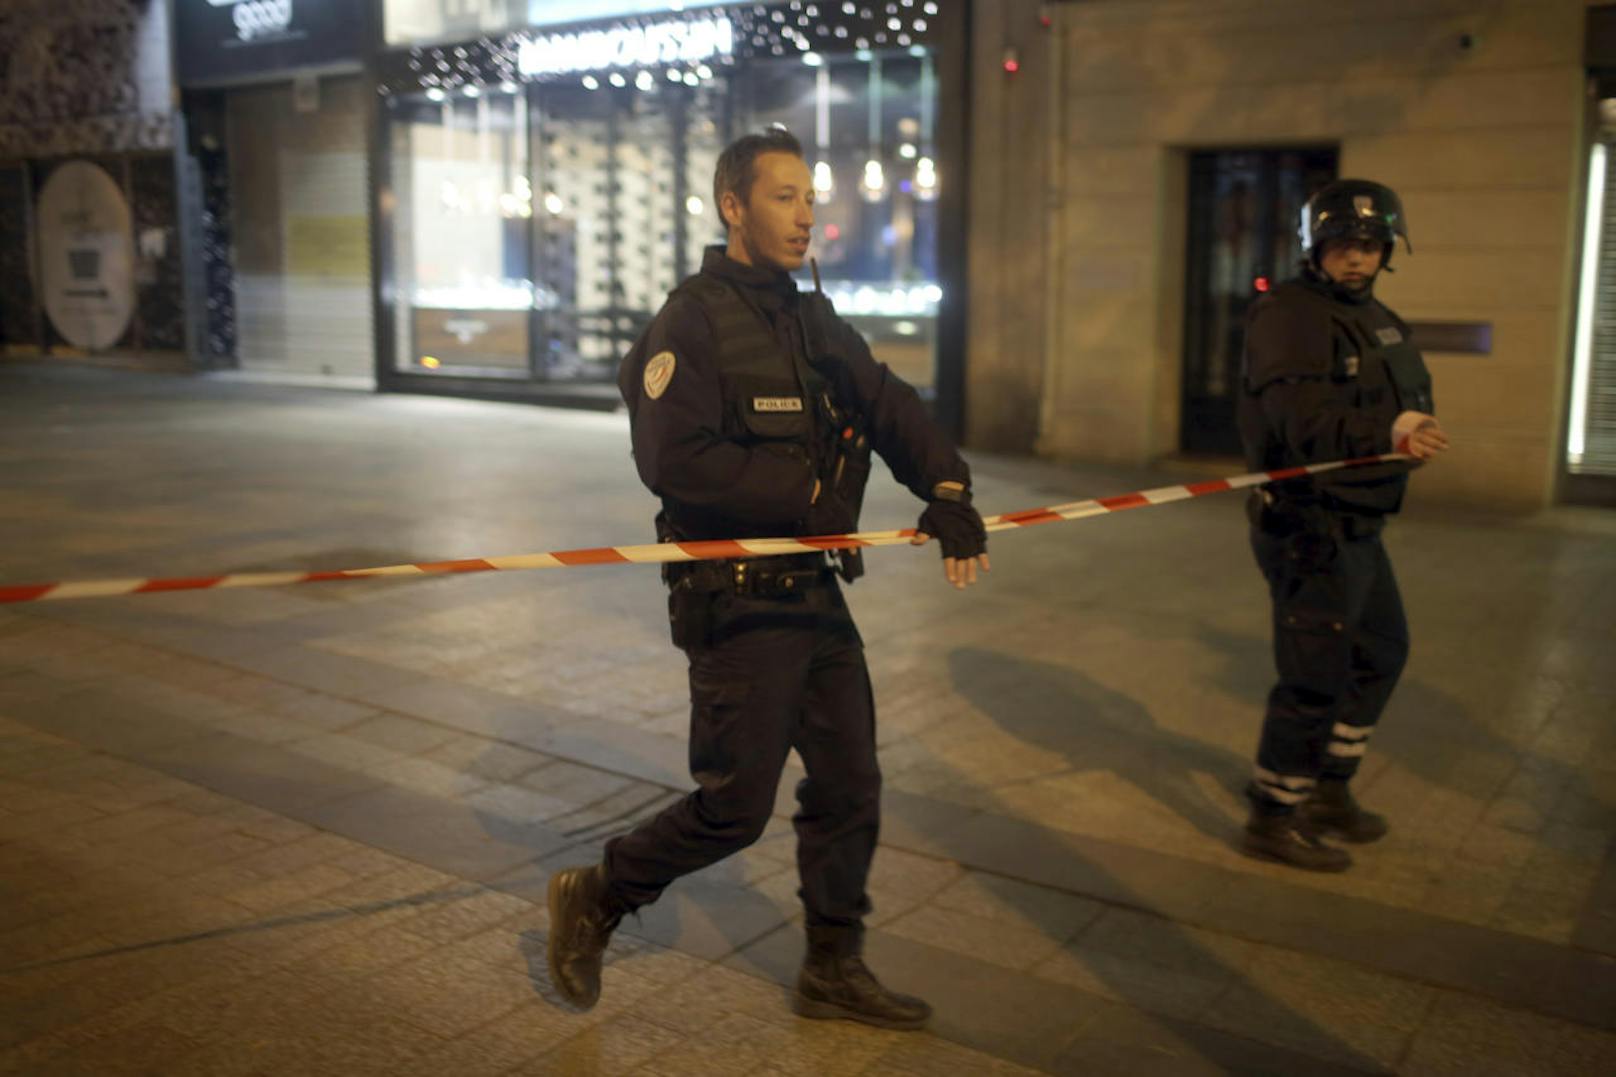 Die Polizei hatte erst am Dienstag in Marseille zwei mutmaßliche Islamisten festgenommen, in deren Wohnung ein Waffenarsenal versteckt war.